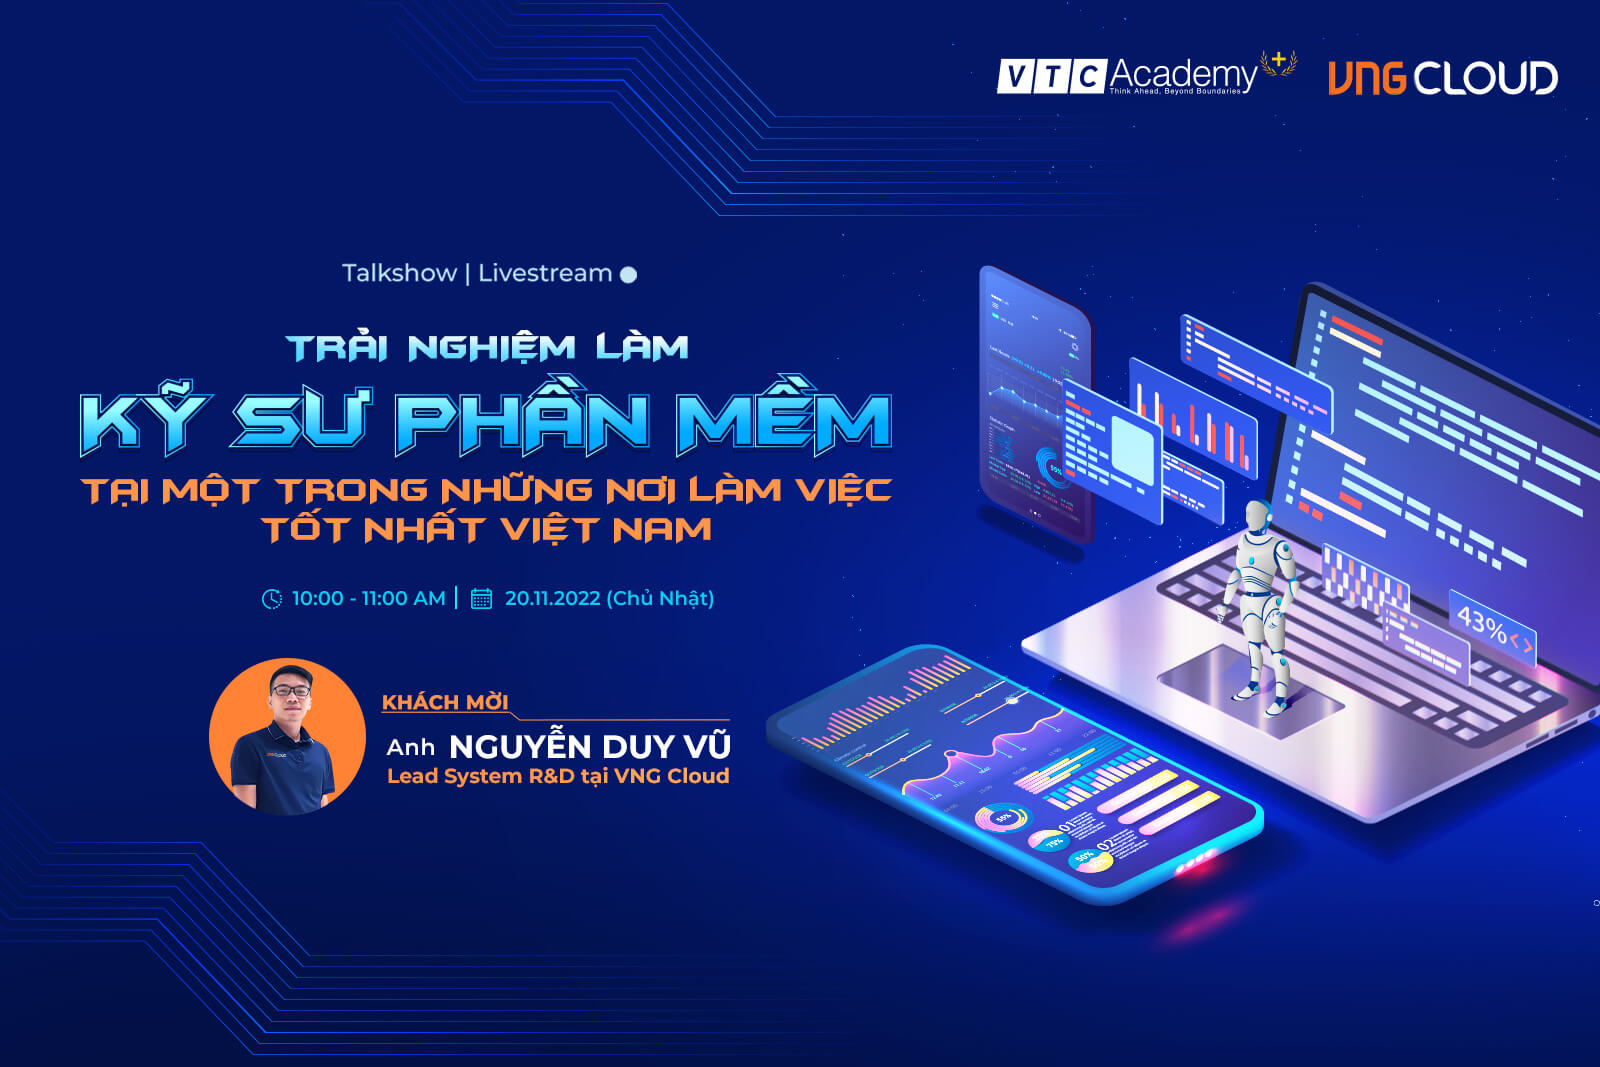 Talkshow trực tuyến “Trải nghiệm làm kỹ sư phần mềm tại một trong những nơi làm việc tốt nhất Việt Nam”